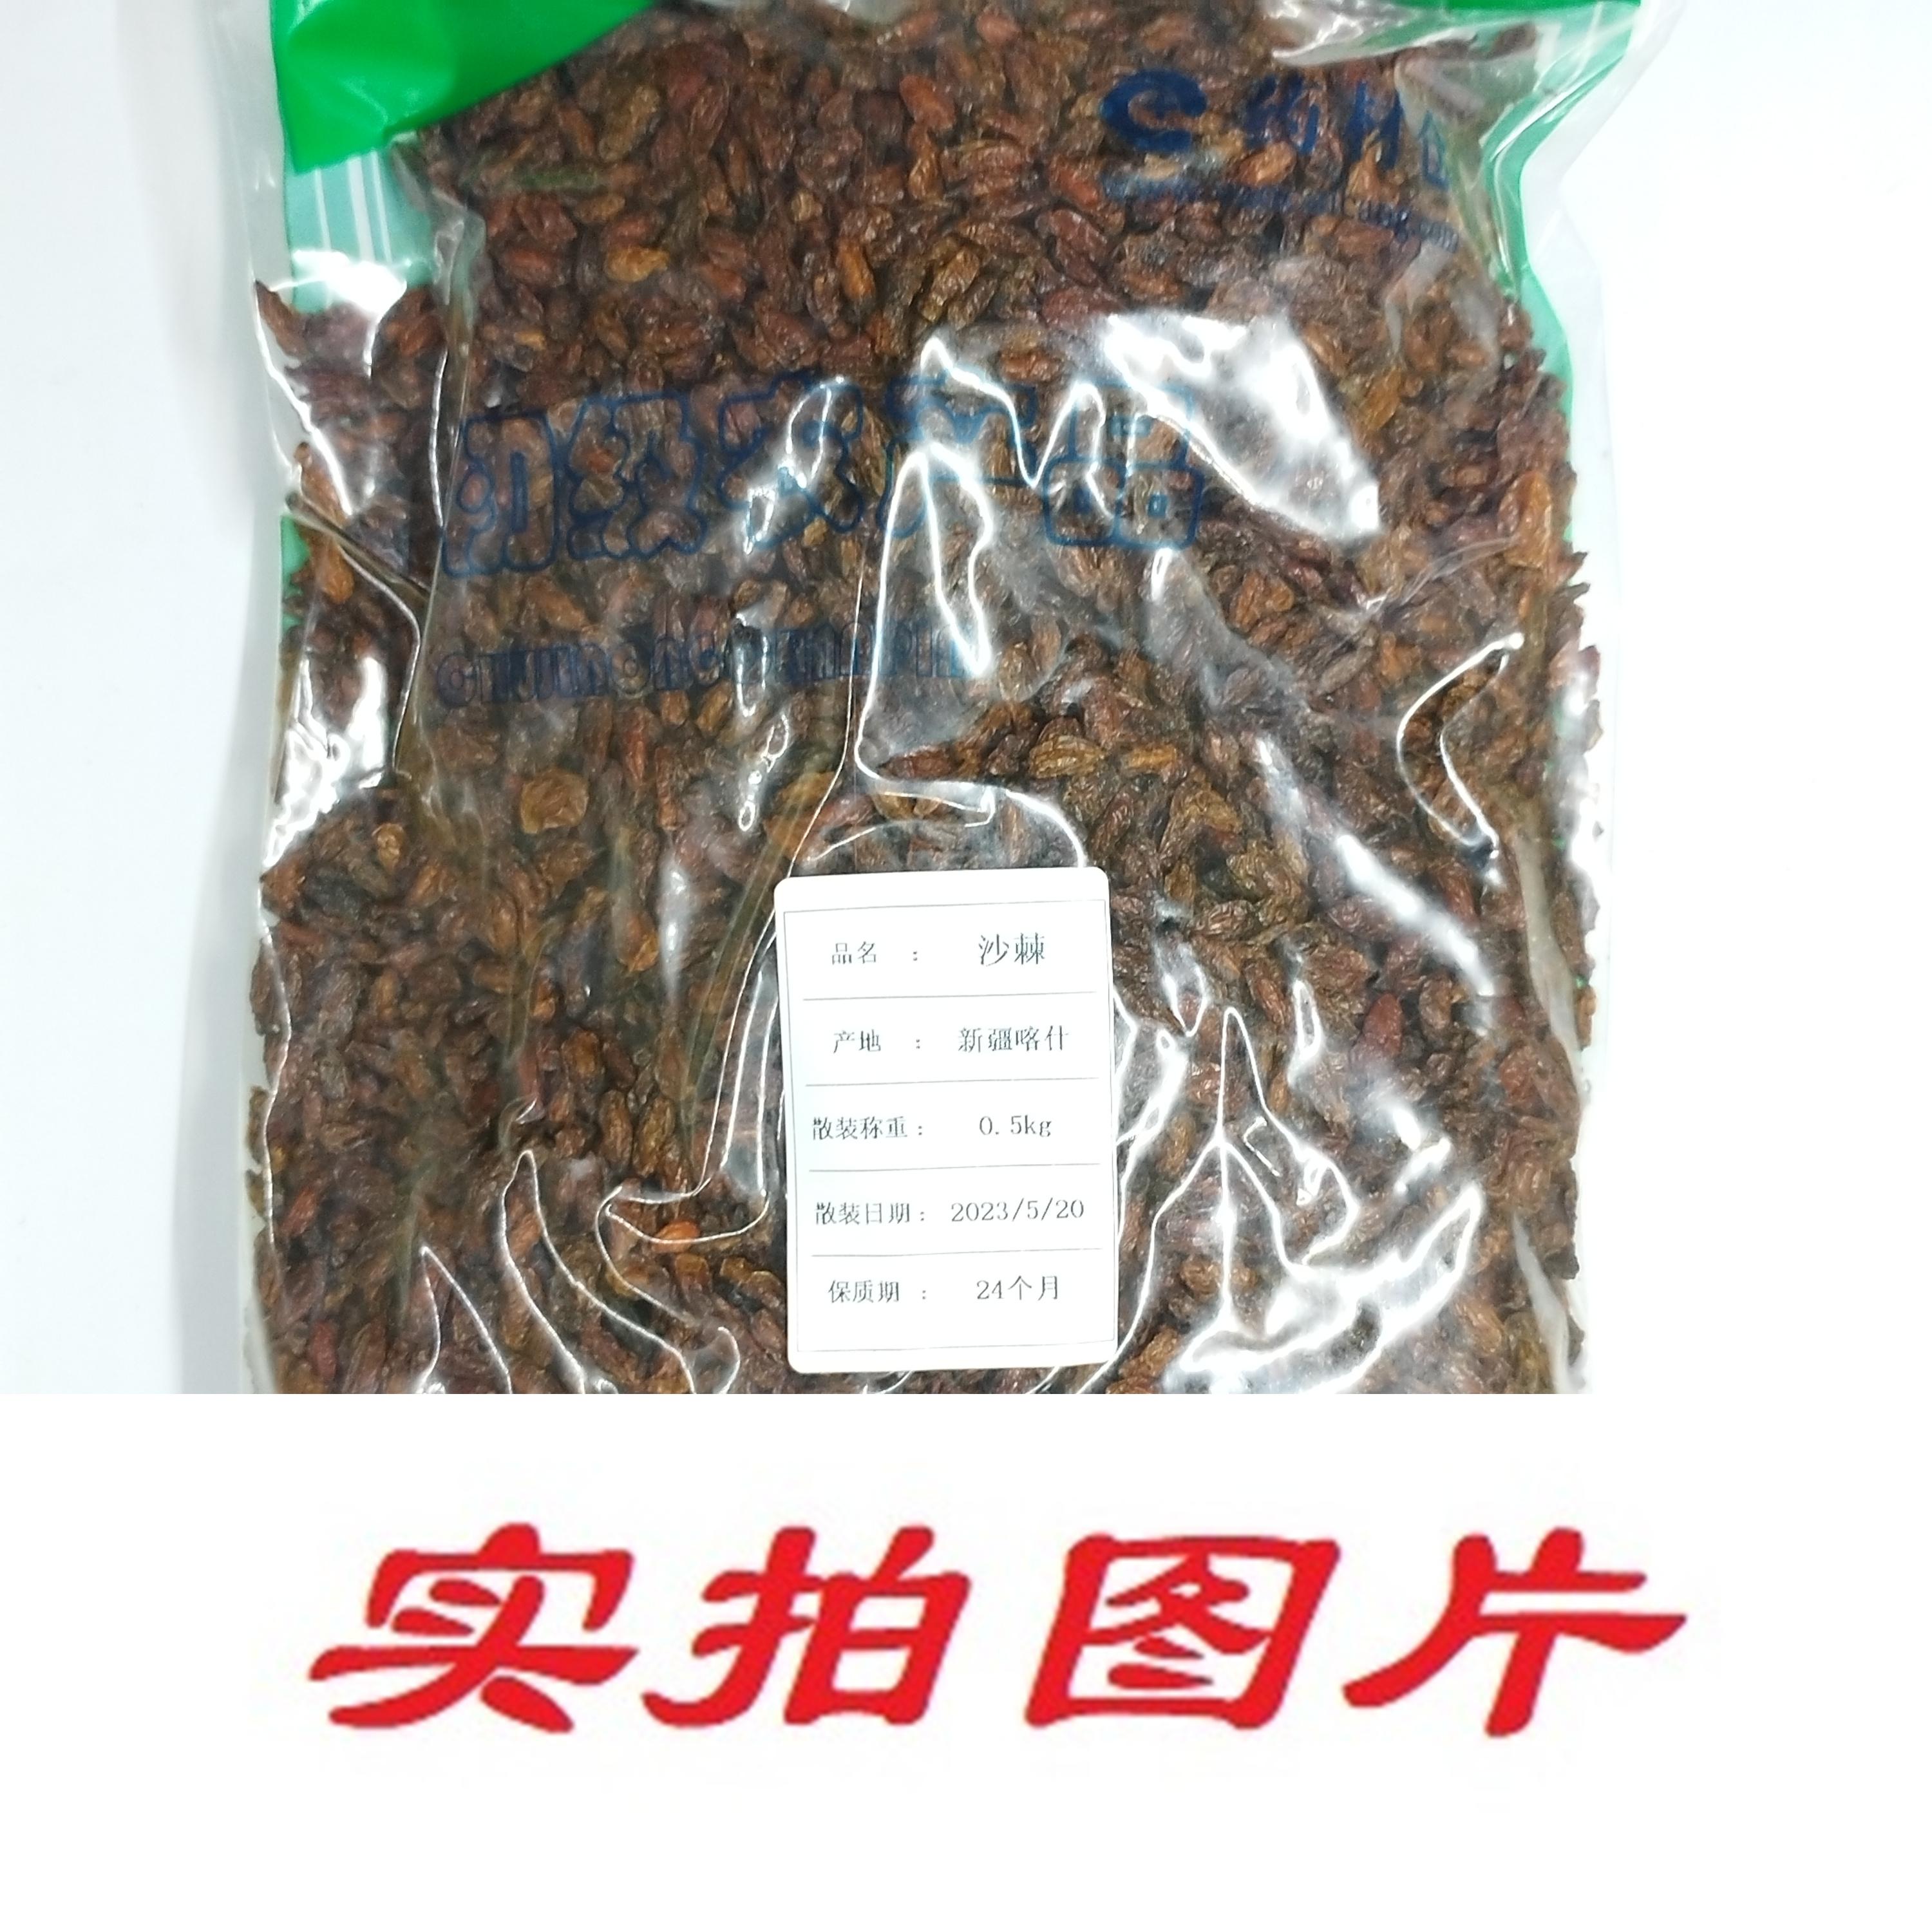 【】沙棘0.5kg-农副产品